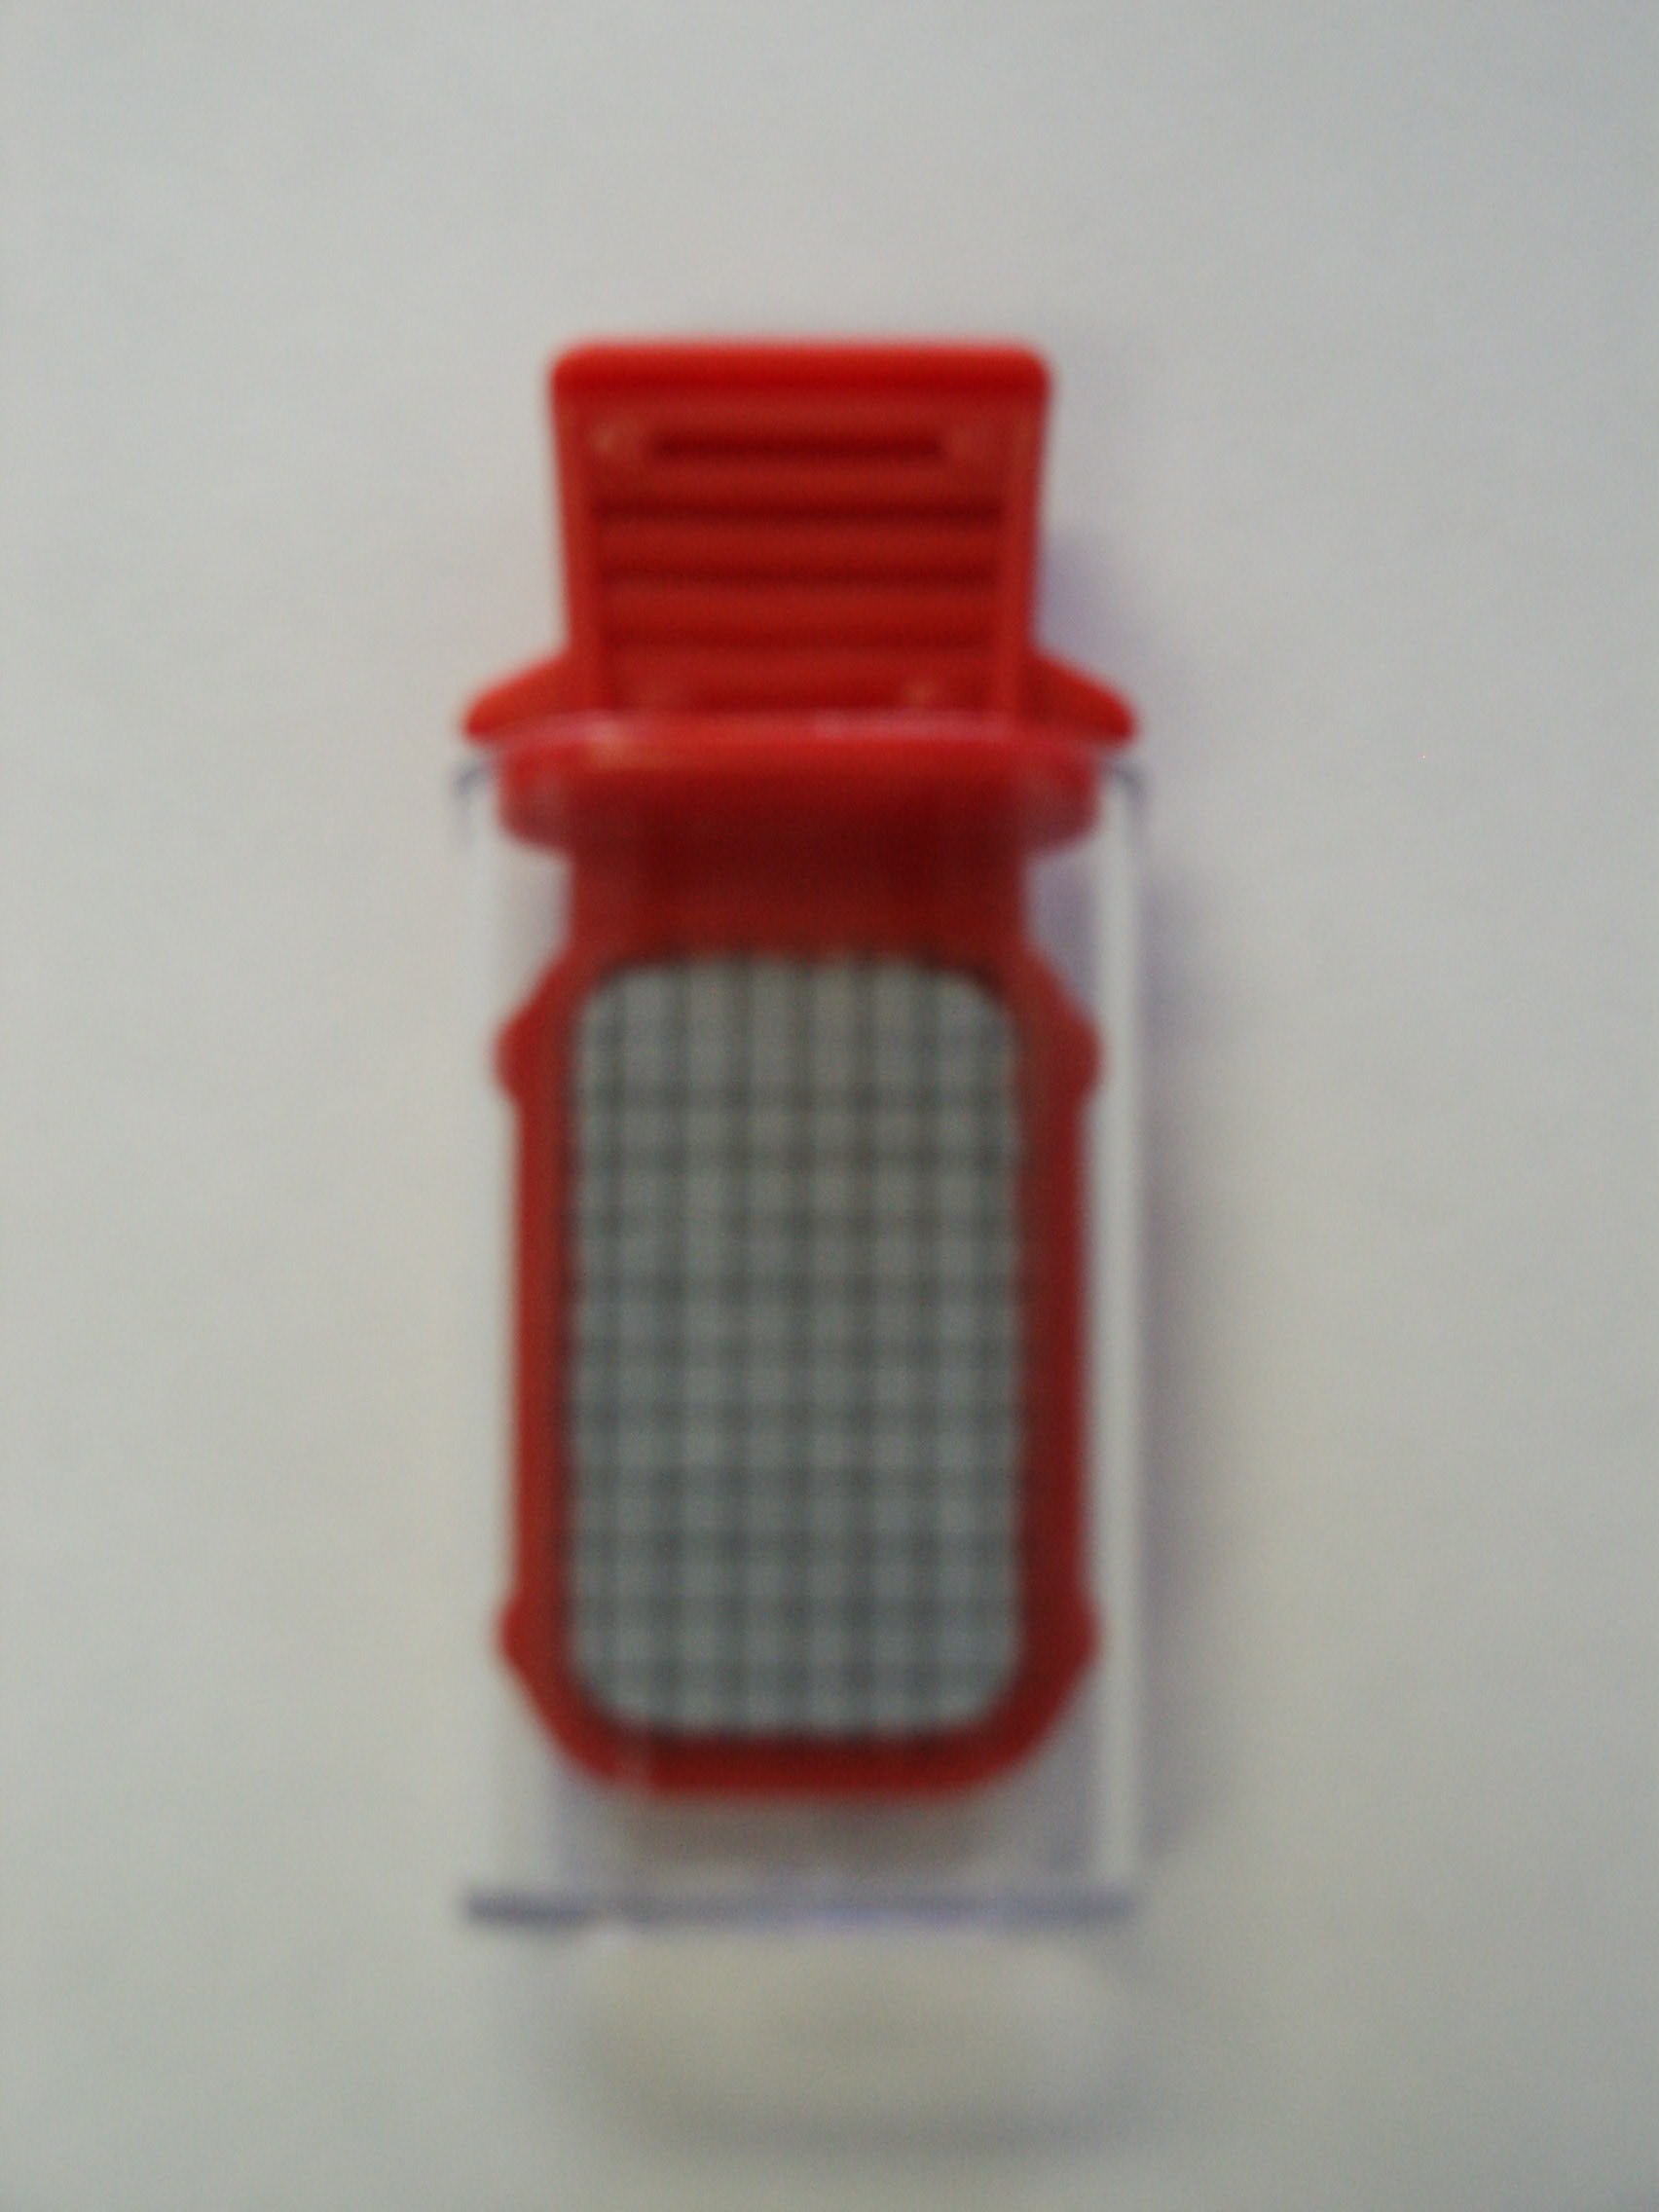 Bacteria Sampler Test Kit